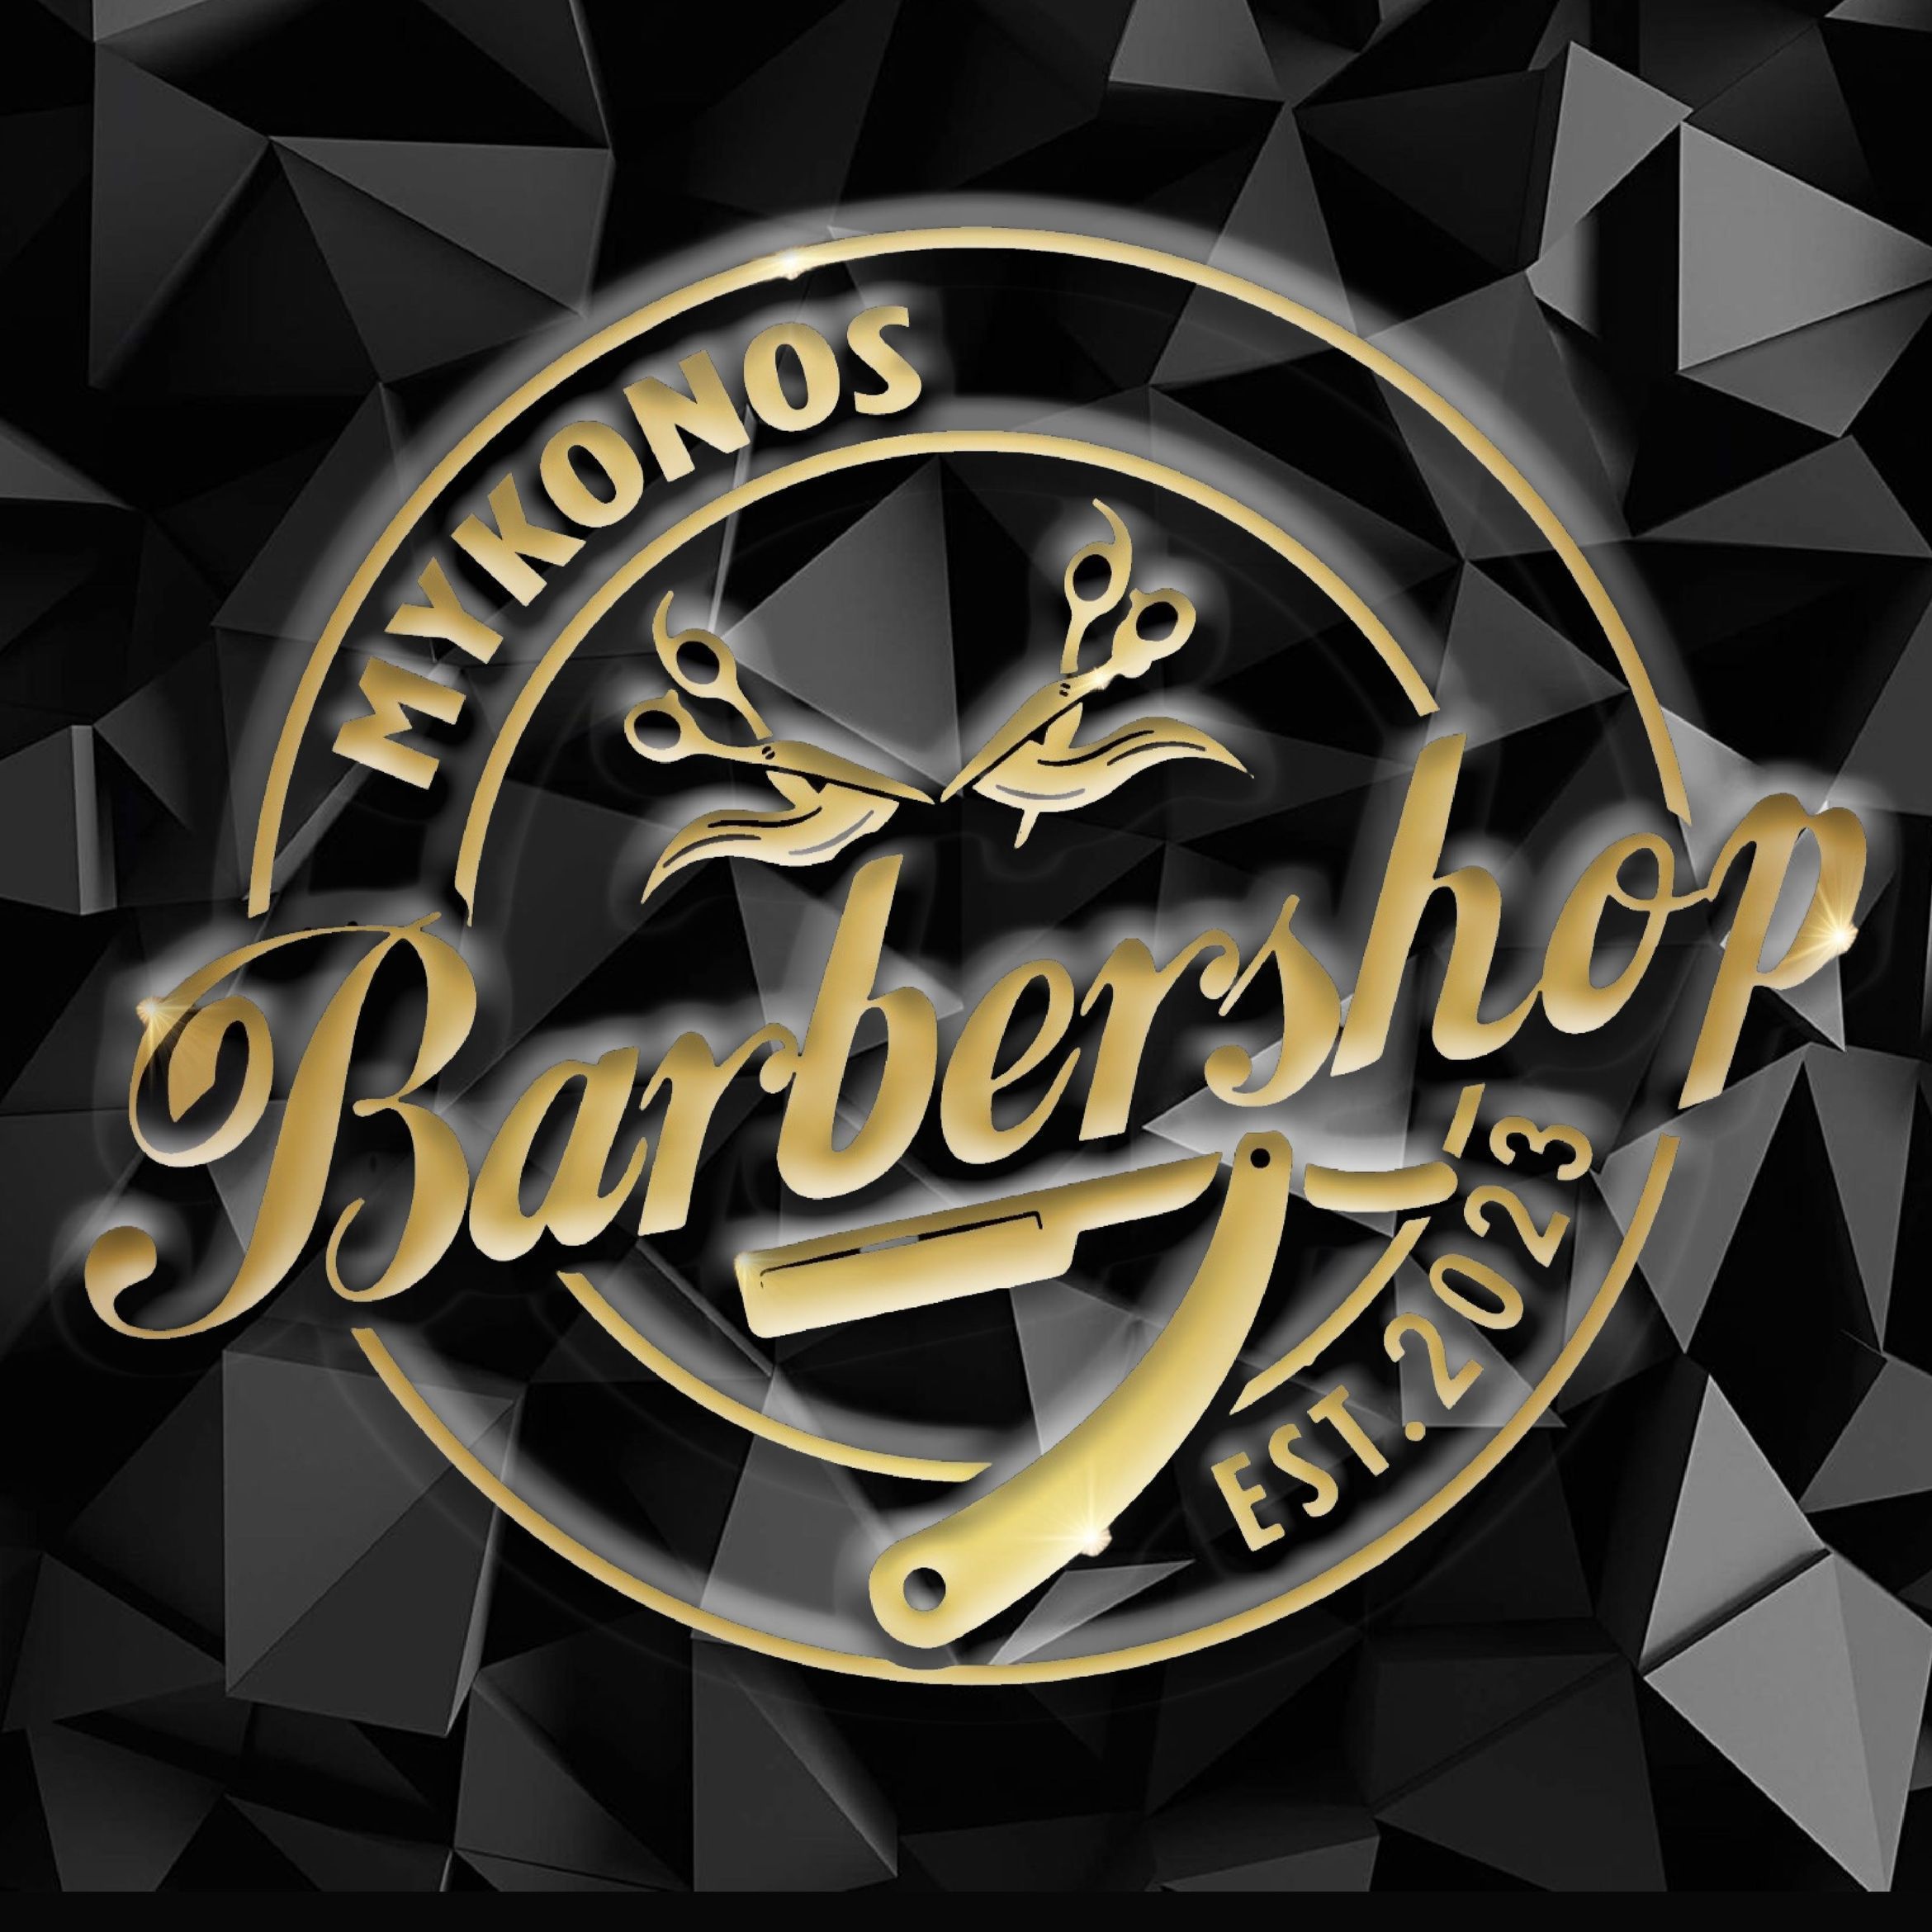 Mykonos Barbershop, carrer de la república de guinea equatorial 2, 46022, Valencia